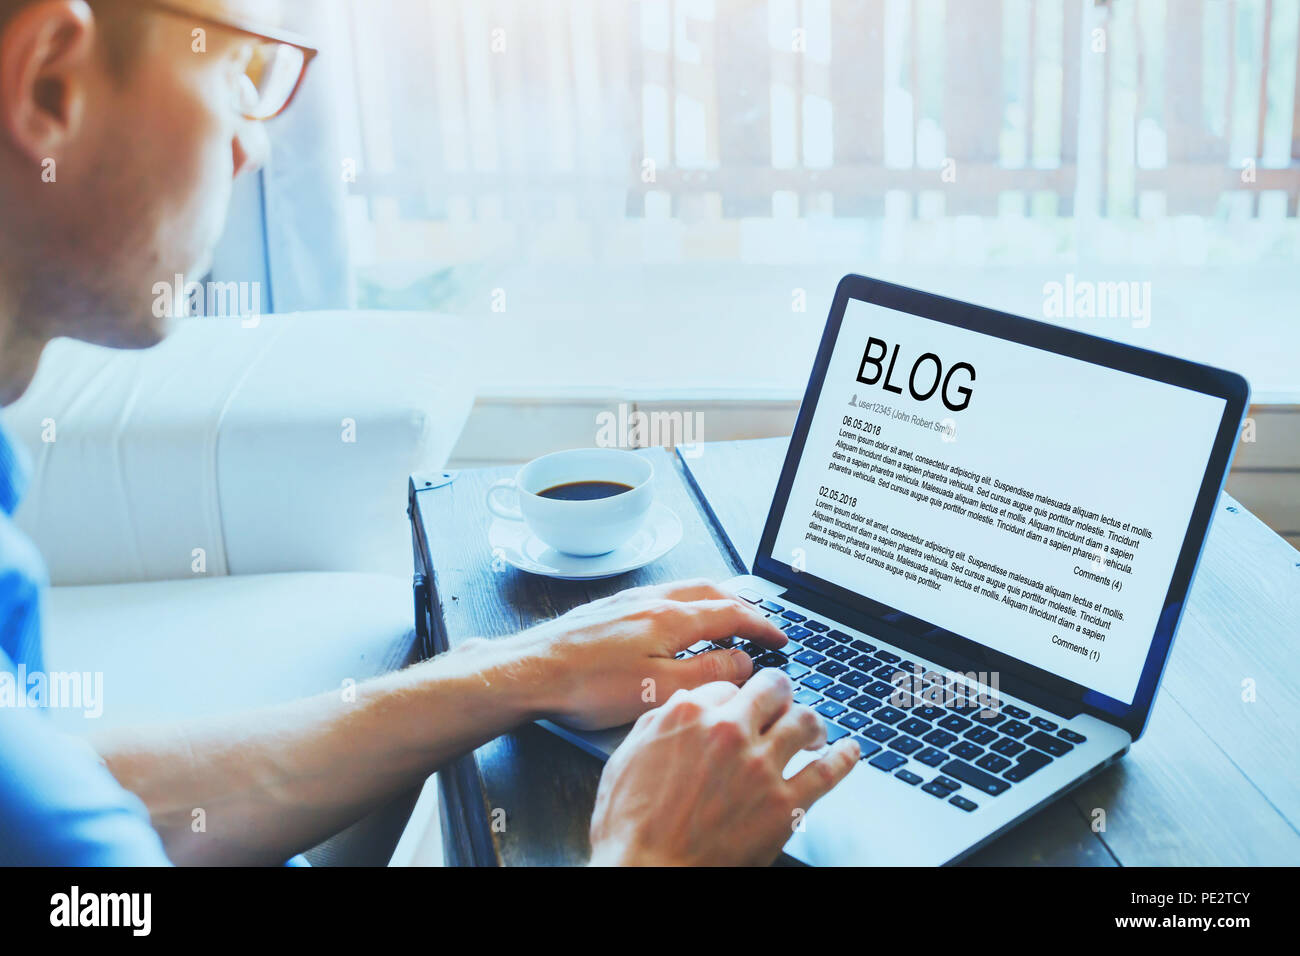 Blog, blogger écrit nouvel article dans l'écran d'ordinateur portable, blogging Banque D'Images